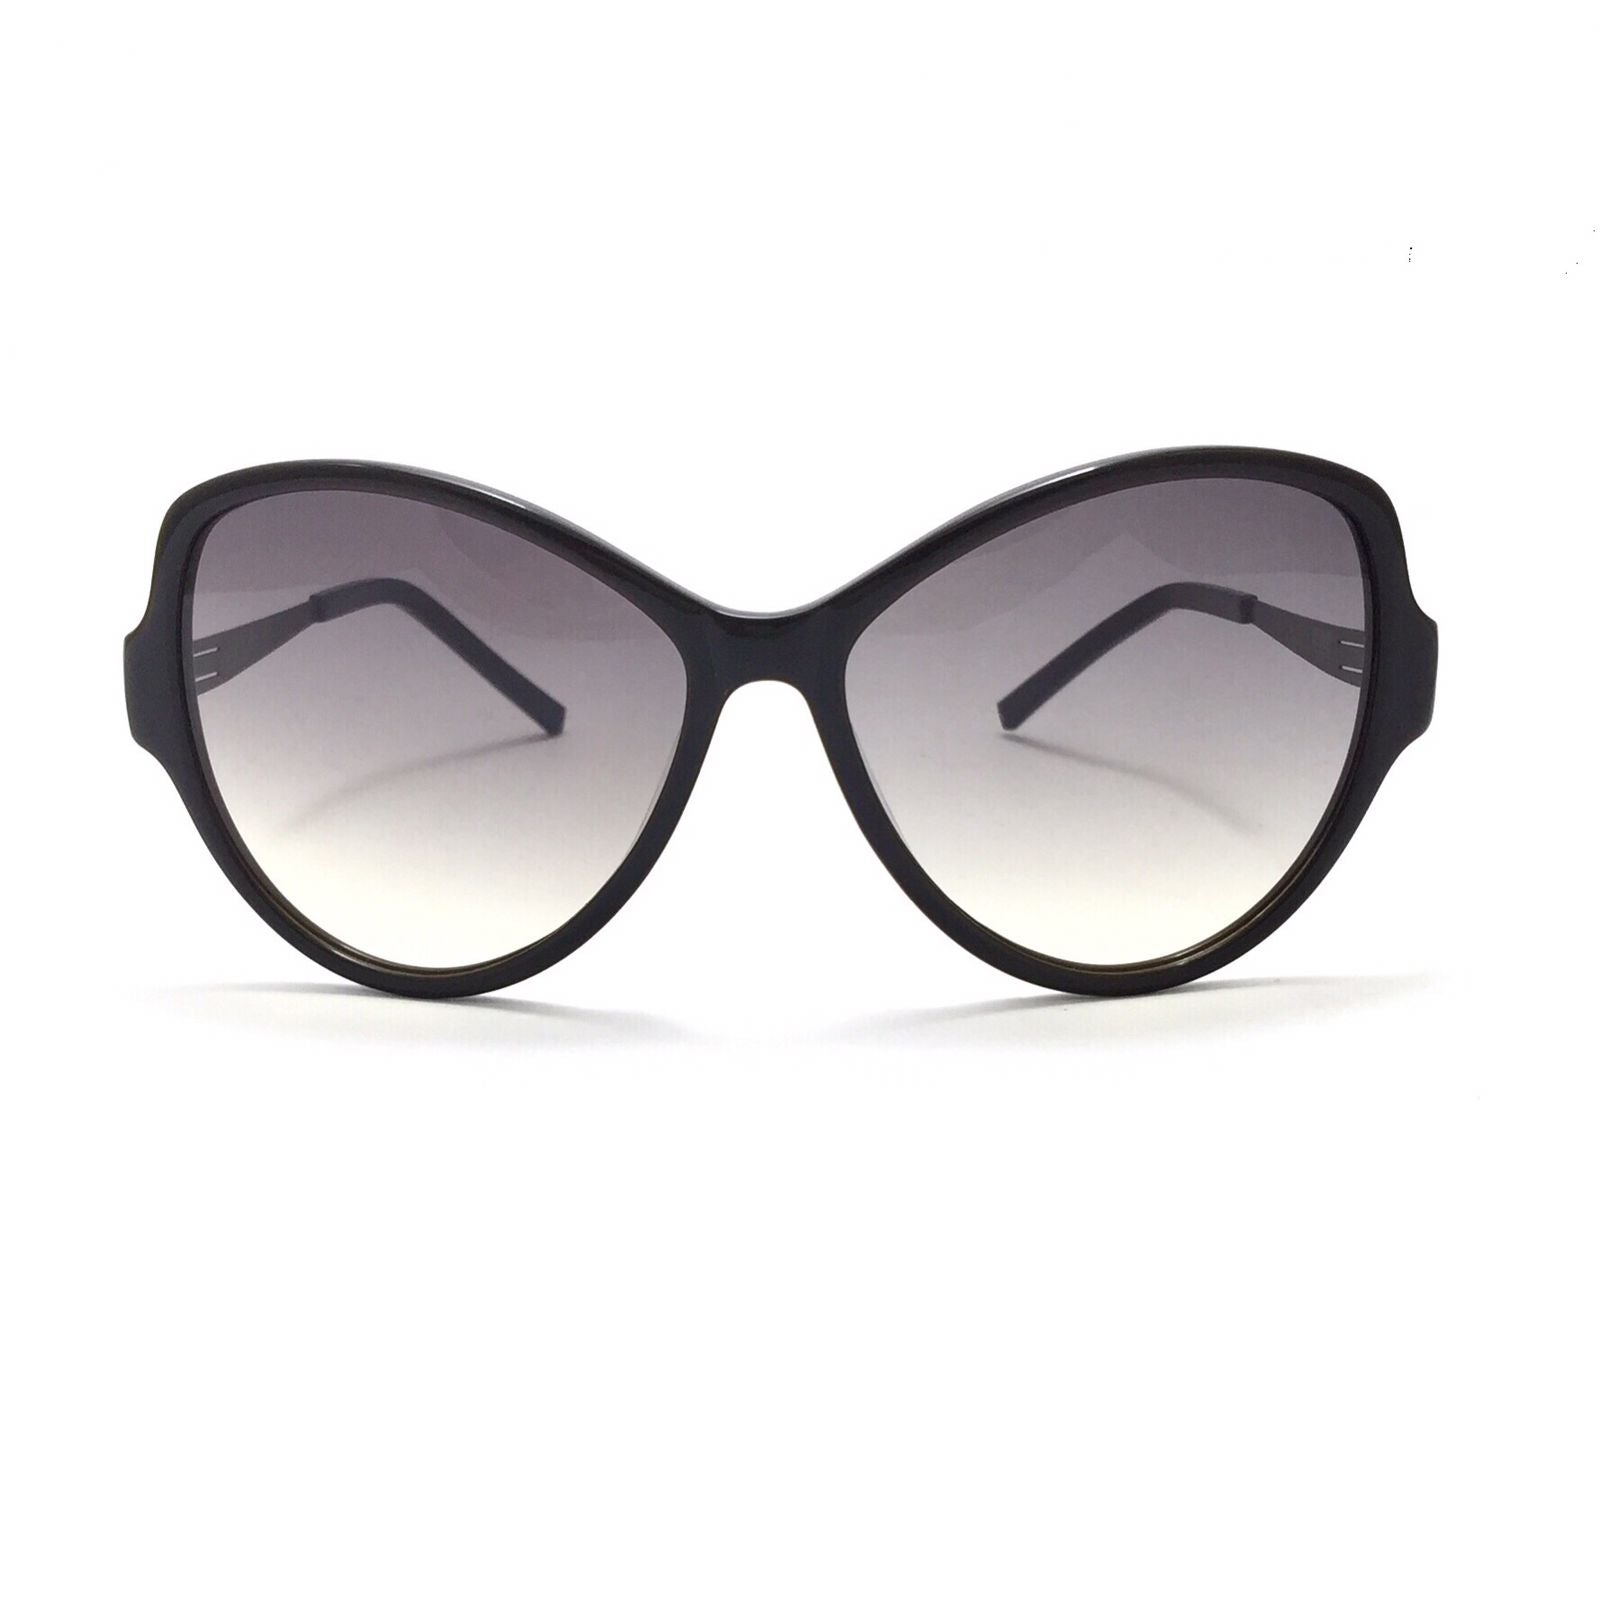 نظارة شمسية بيضاوية الشكل للسيدات من آي سي برلين paggy